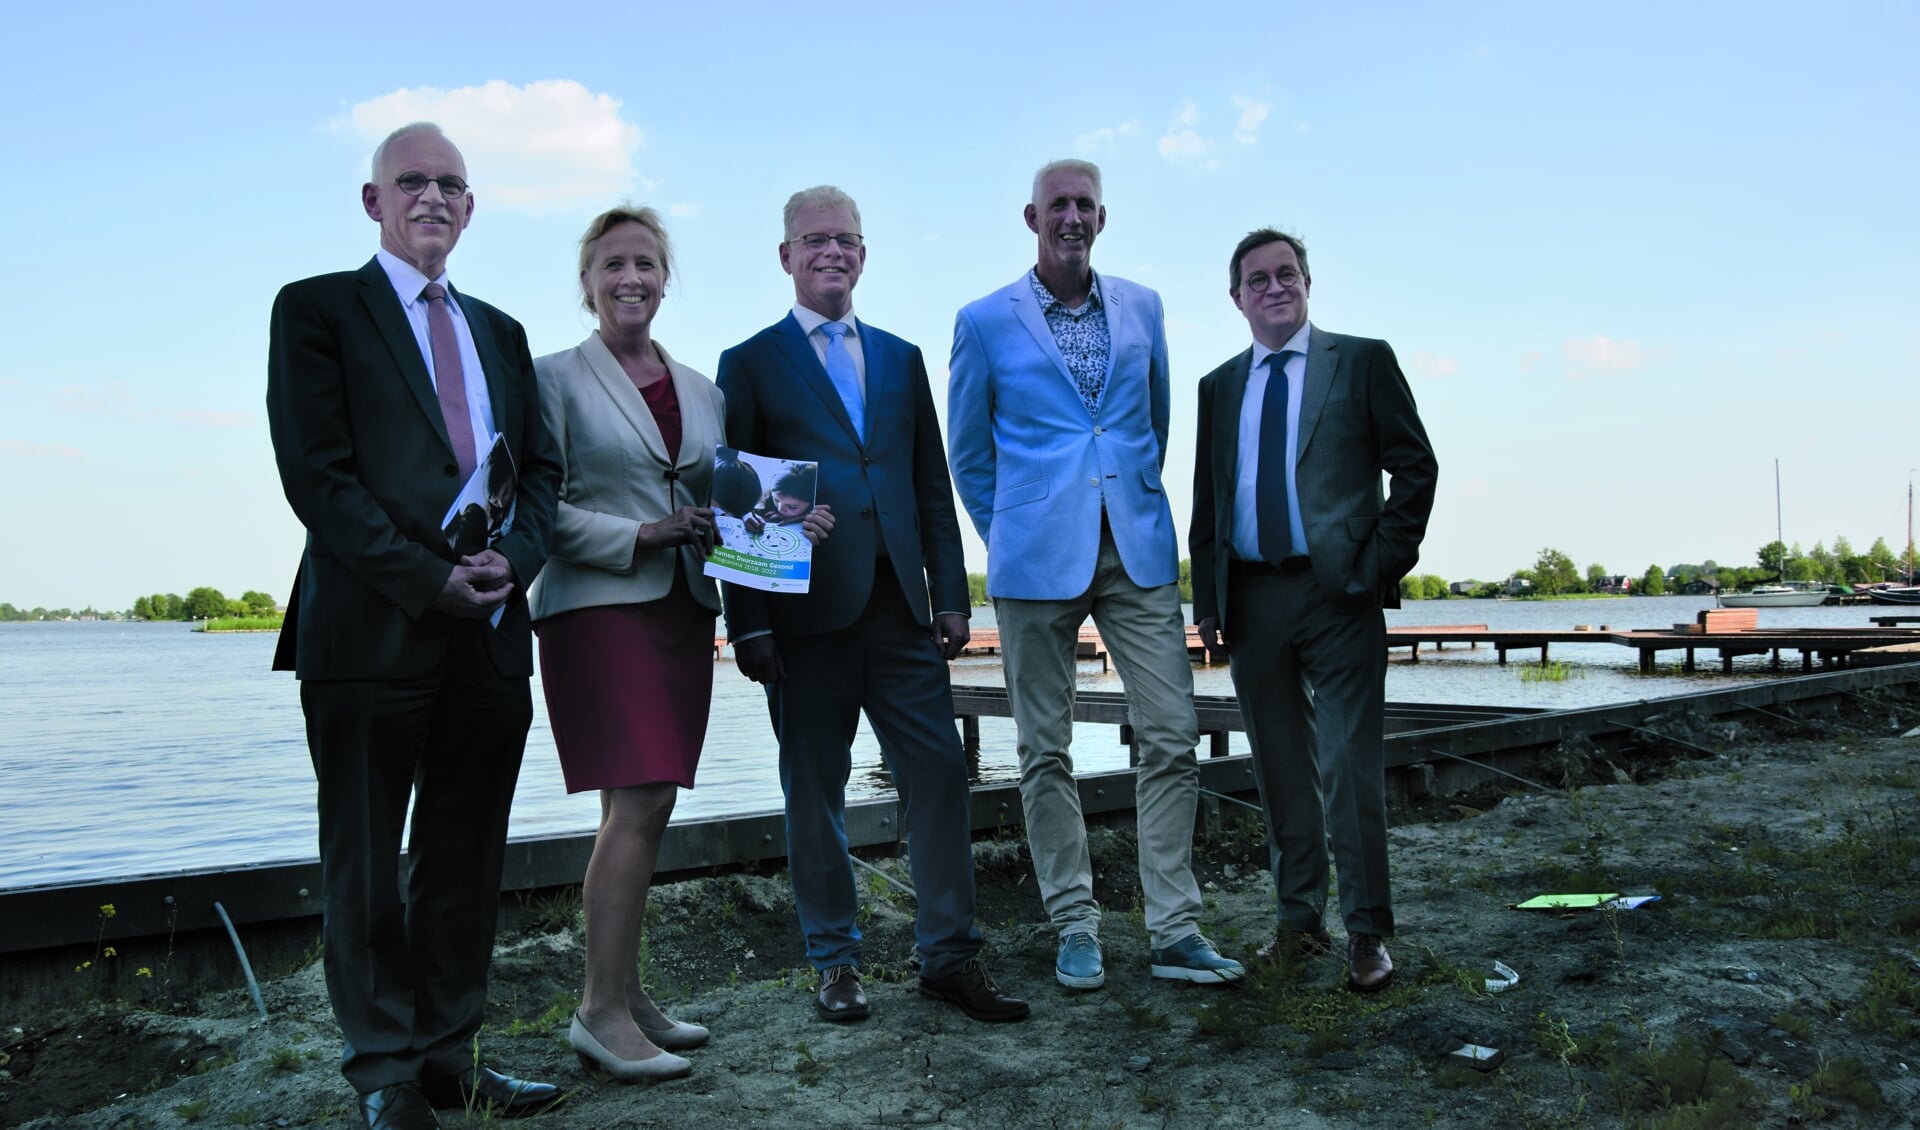 De wethouders van het nieuwe college: Kees Oskam, Inge Nieuwenhuizen, Dirk-Jan Knol, Robèrt Smits en Jan Leendert van den Heuvel